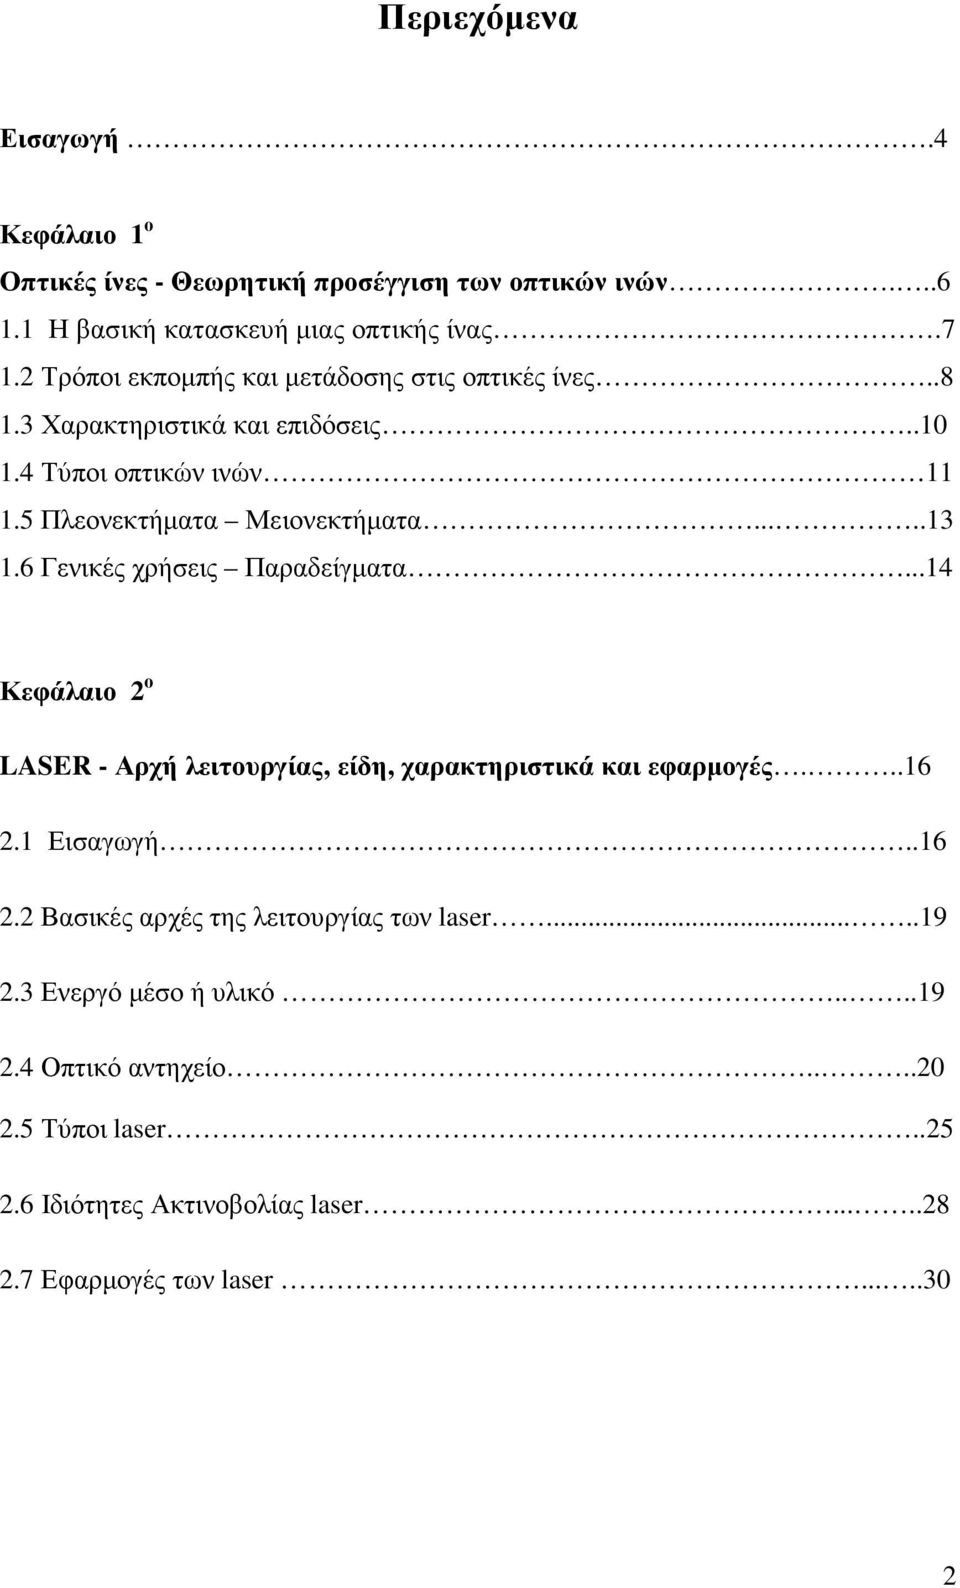 6 Γενικές χρήσεις Παραδείγµατα...14 Κεφάλαιο 2 ο LASER - Αρχή λειτουργίας, είδη, χαρακτηριστικά και εφαρµογές...16 2.